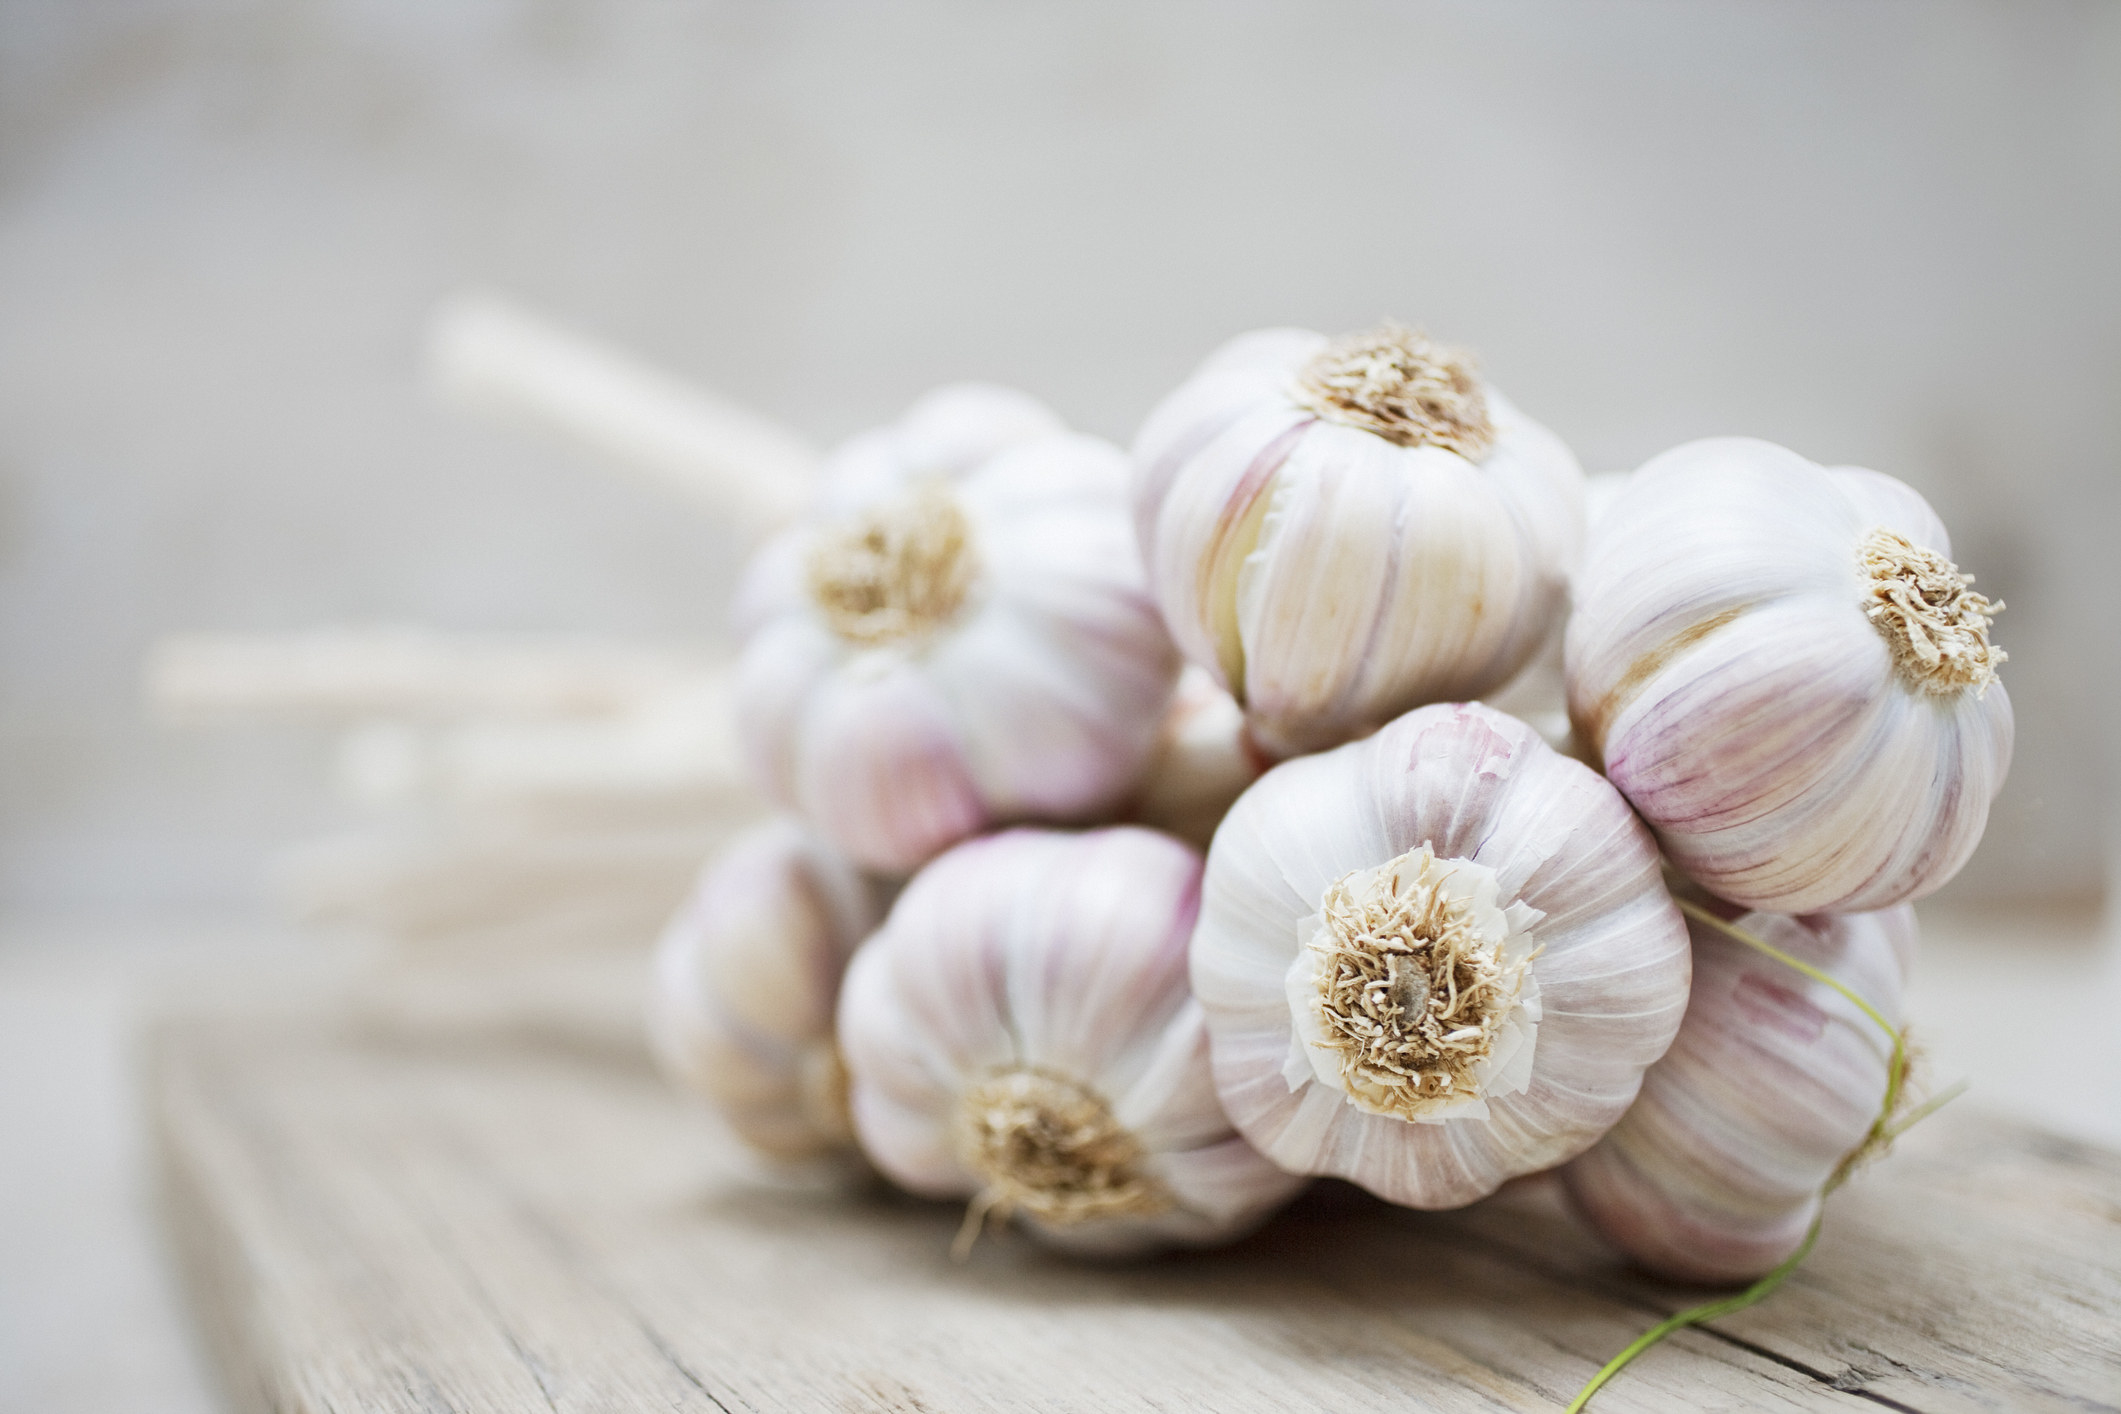 a pile of garlic on a cutting board